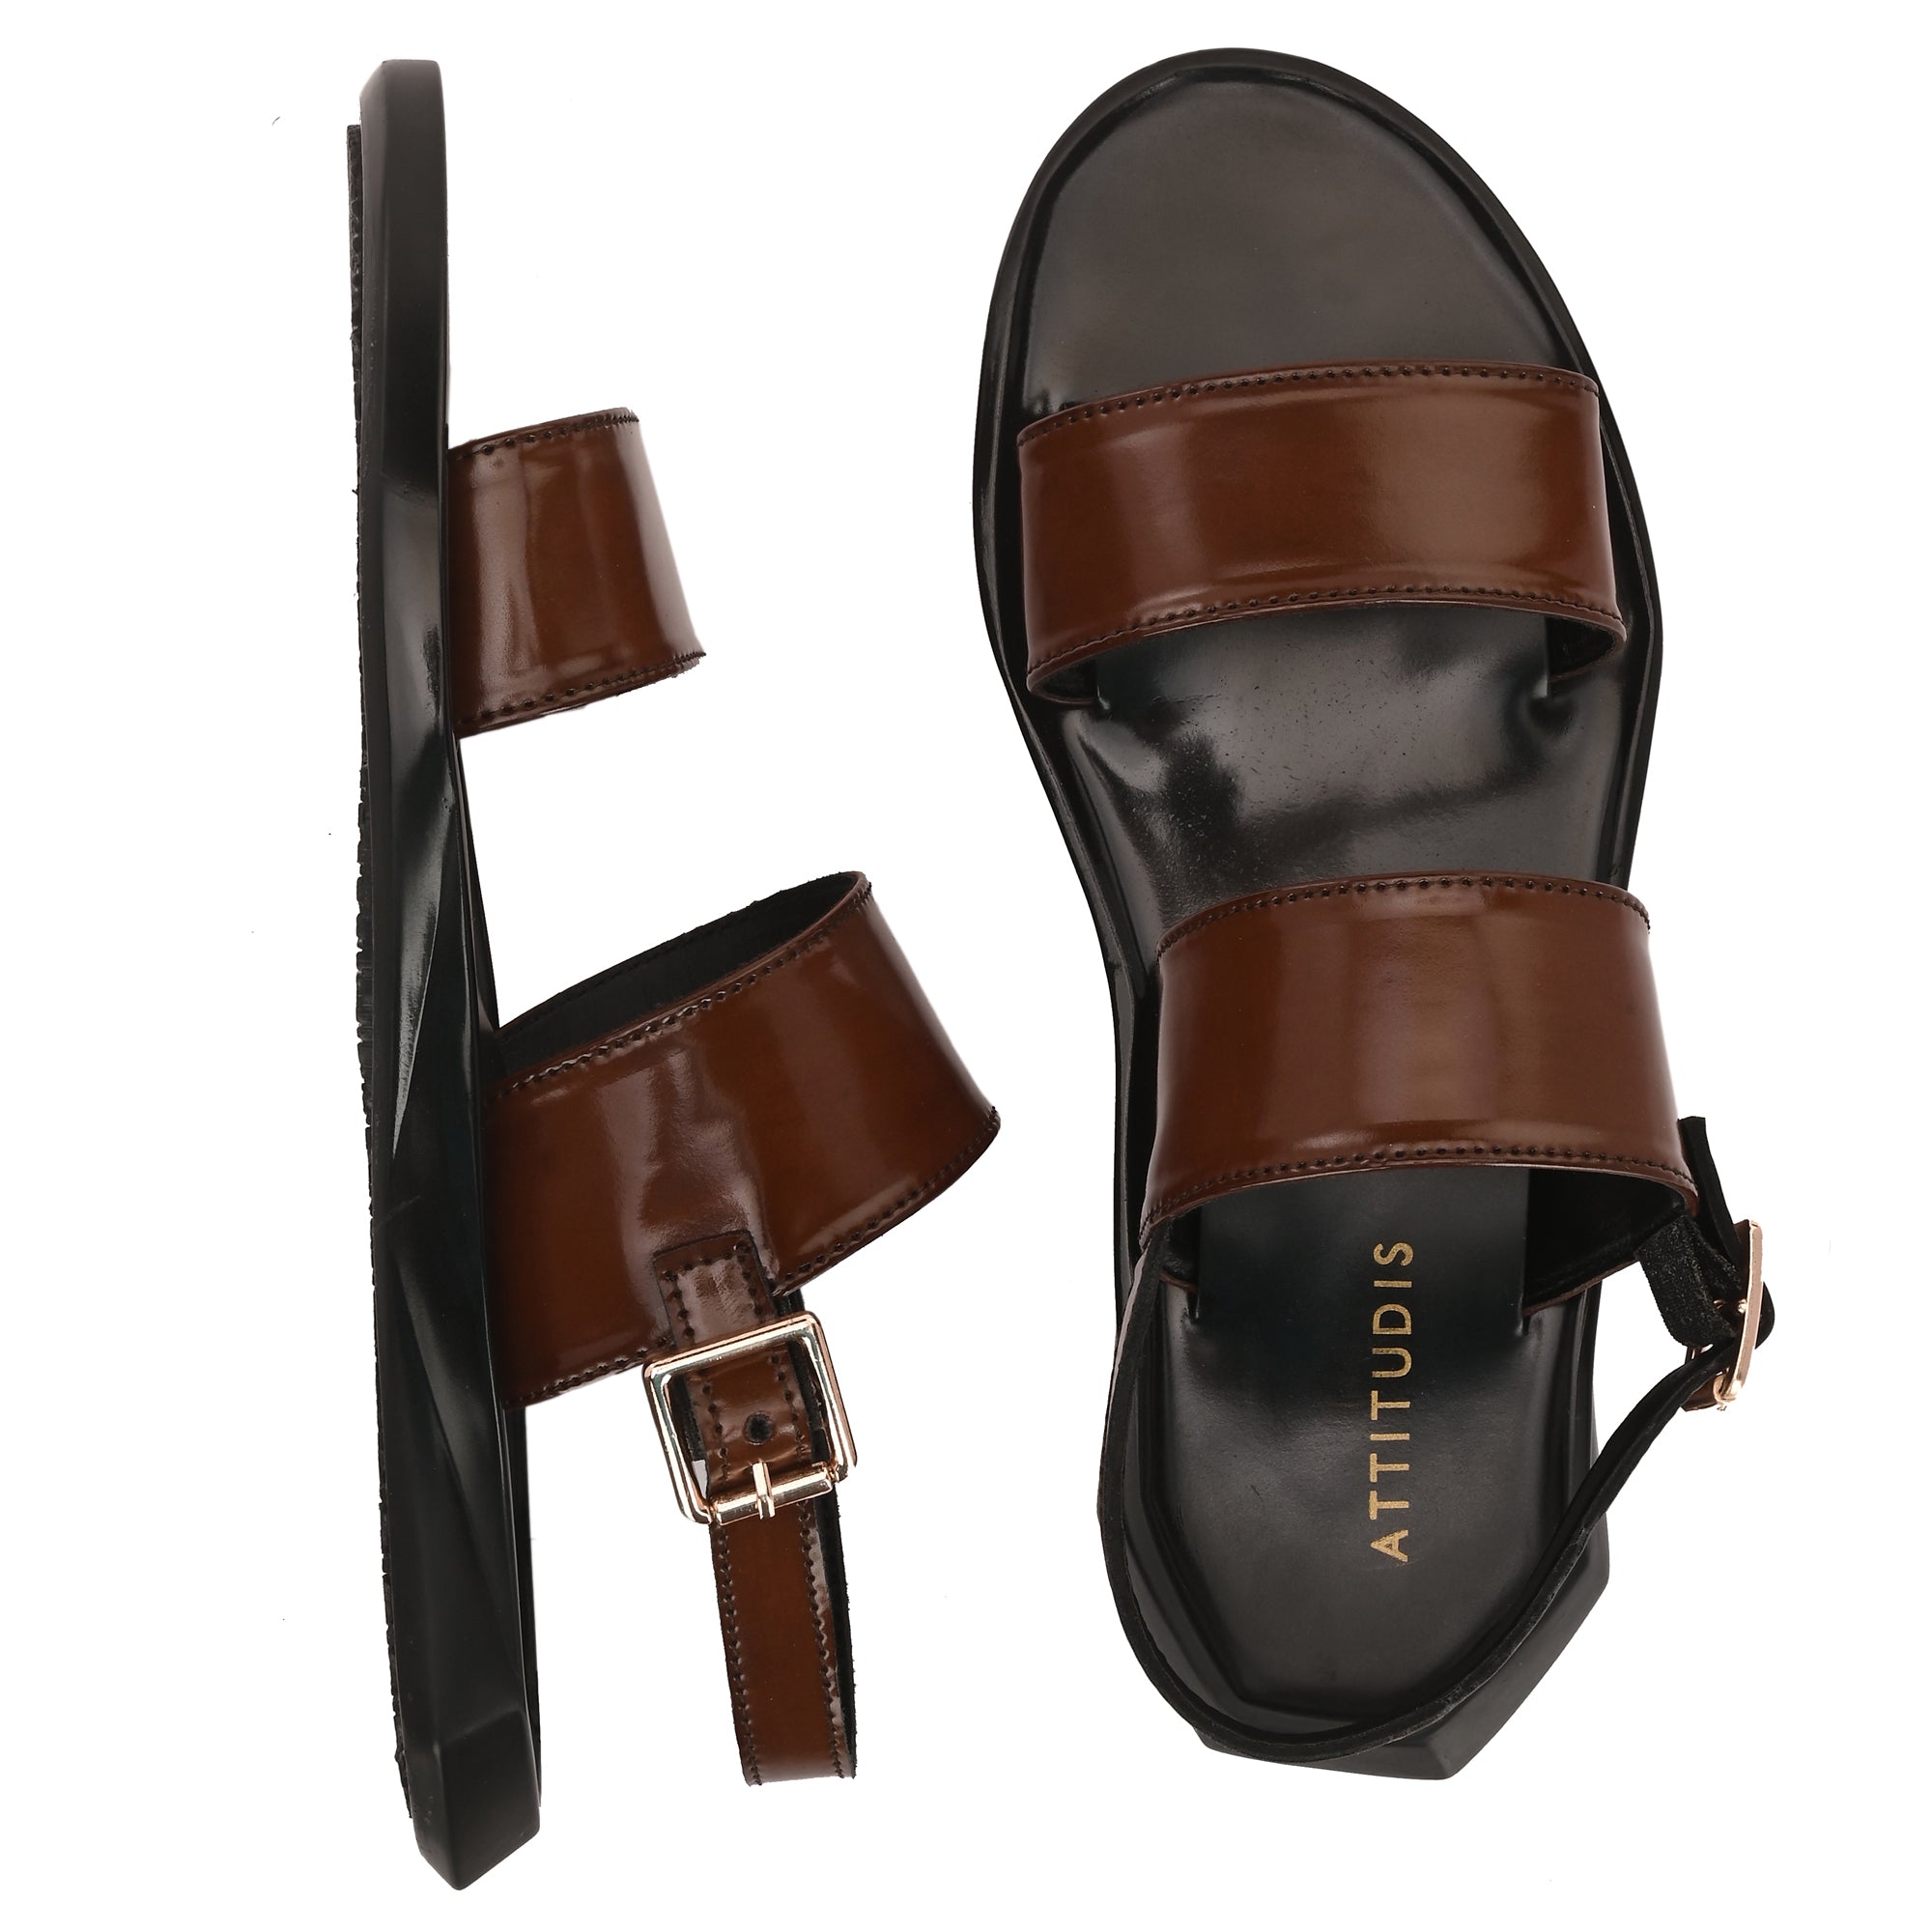 attitudist-brown-double-strap-flip-flop-sandals-for-men